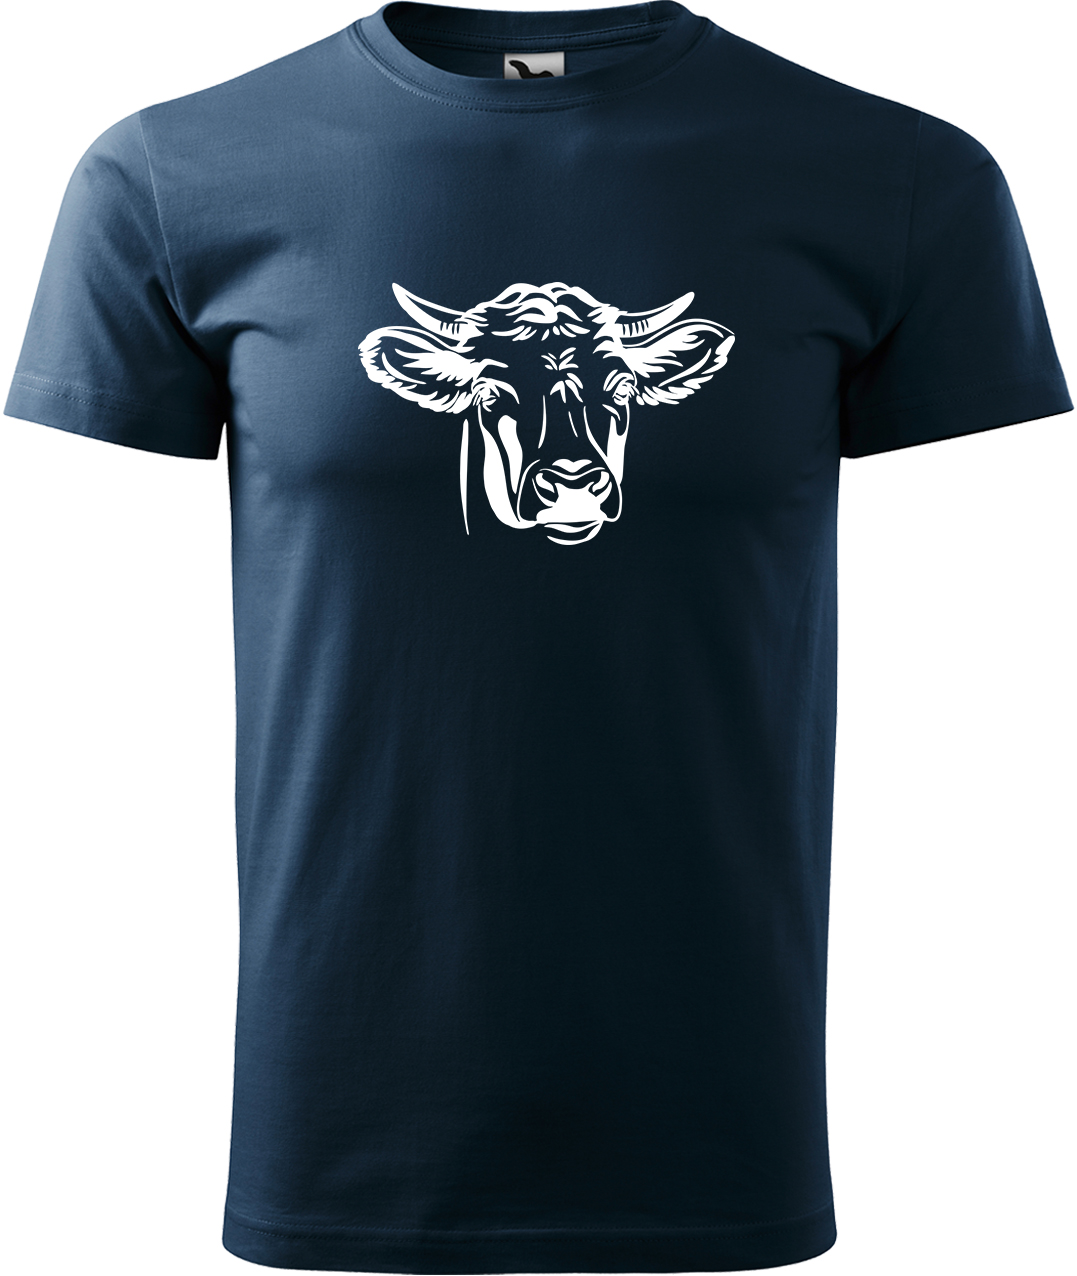 Pánské tričko s krávou - Hlava krávy Velikost: 4XL, Barva: Námořní modrá (02), Střih: pánský